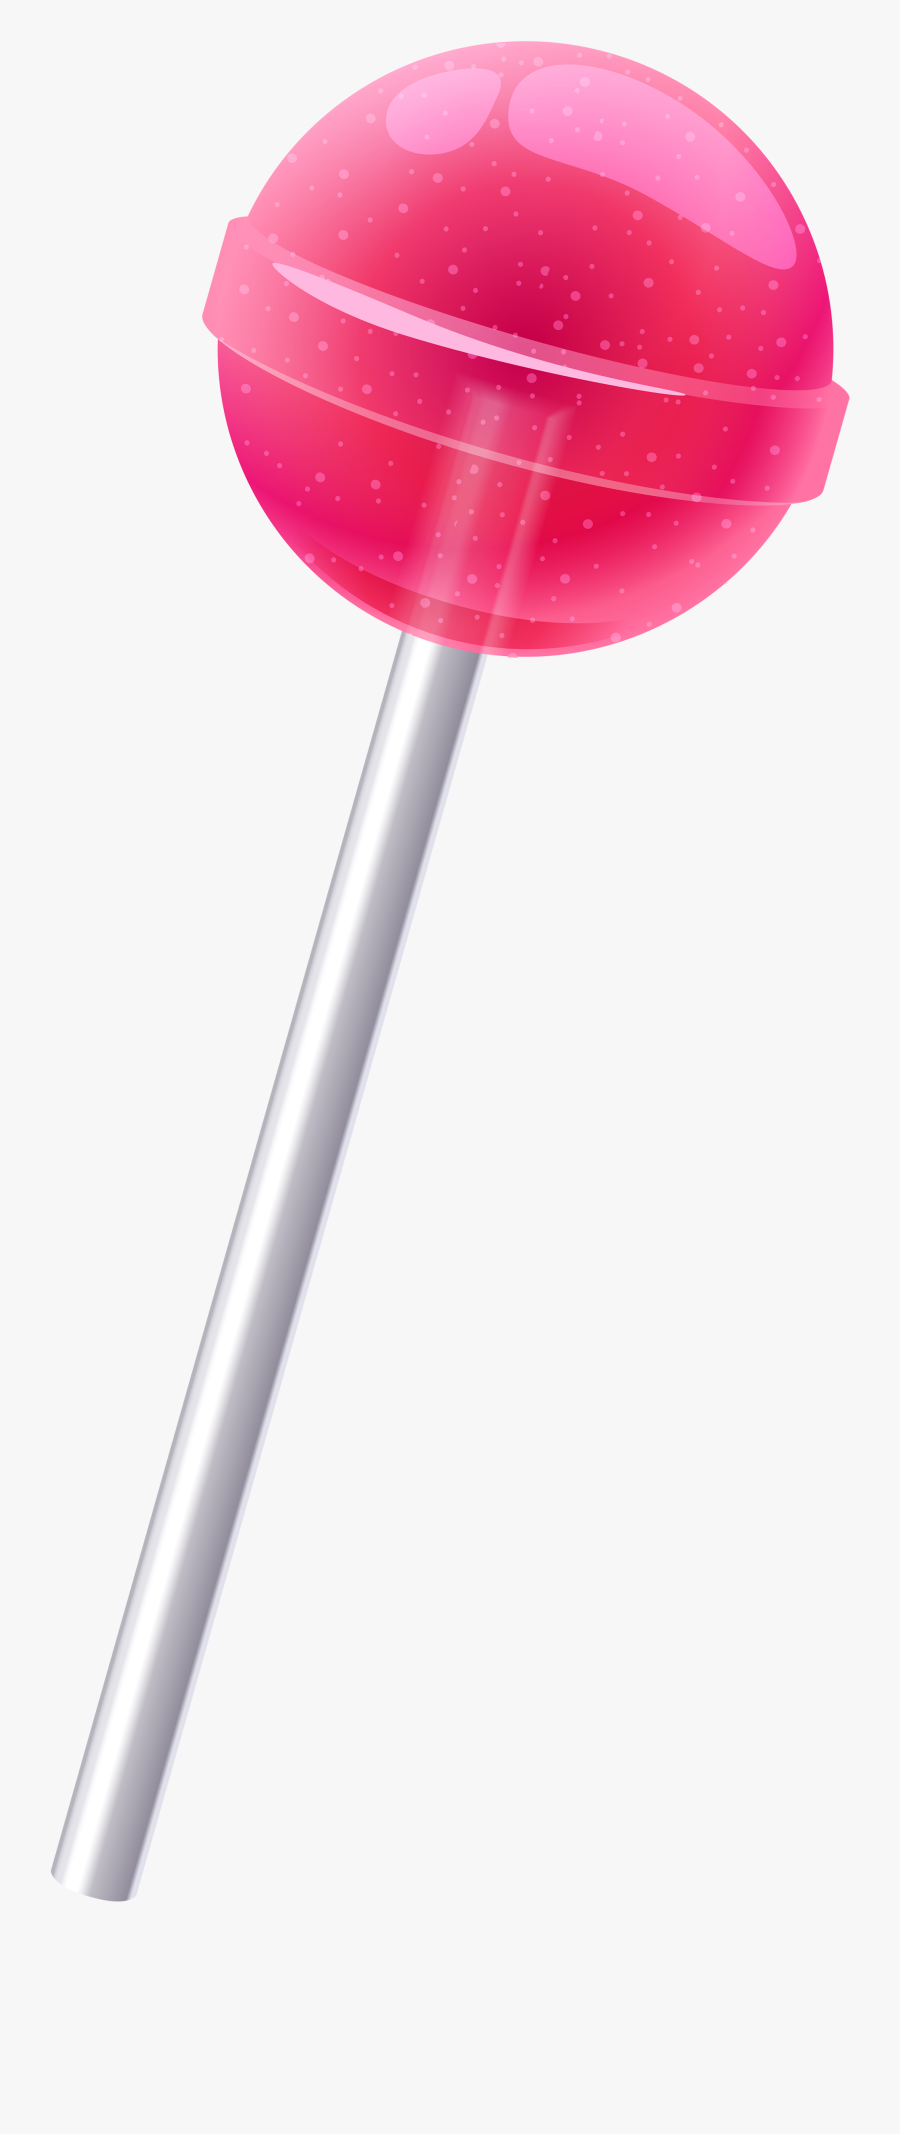 Lollipop Png, Transparent Clipart